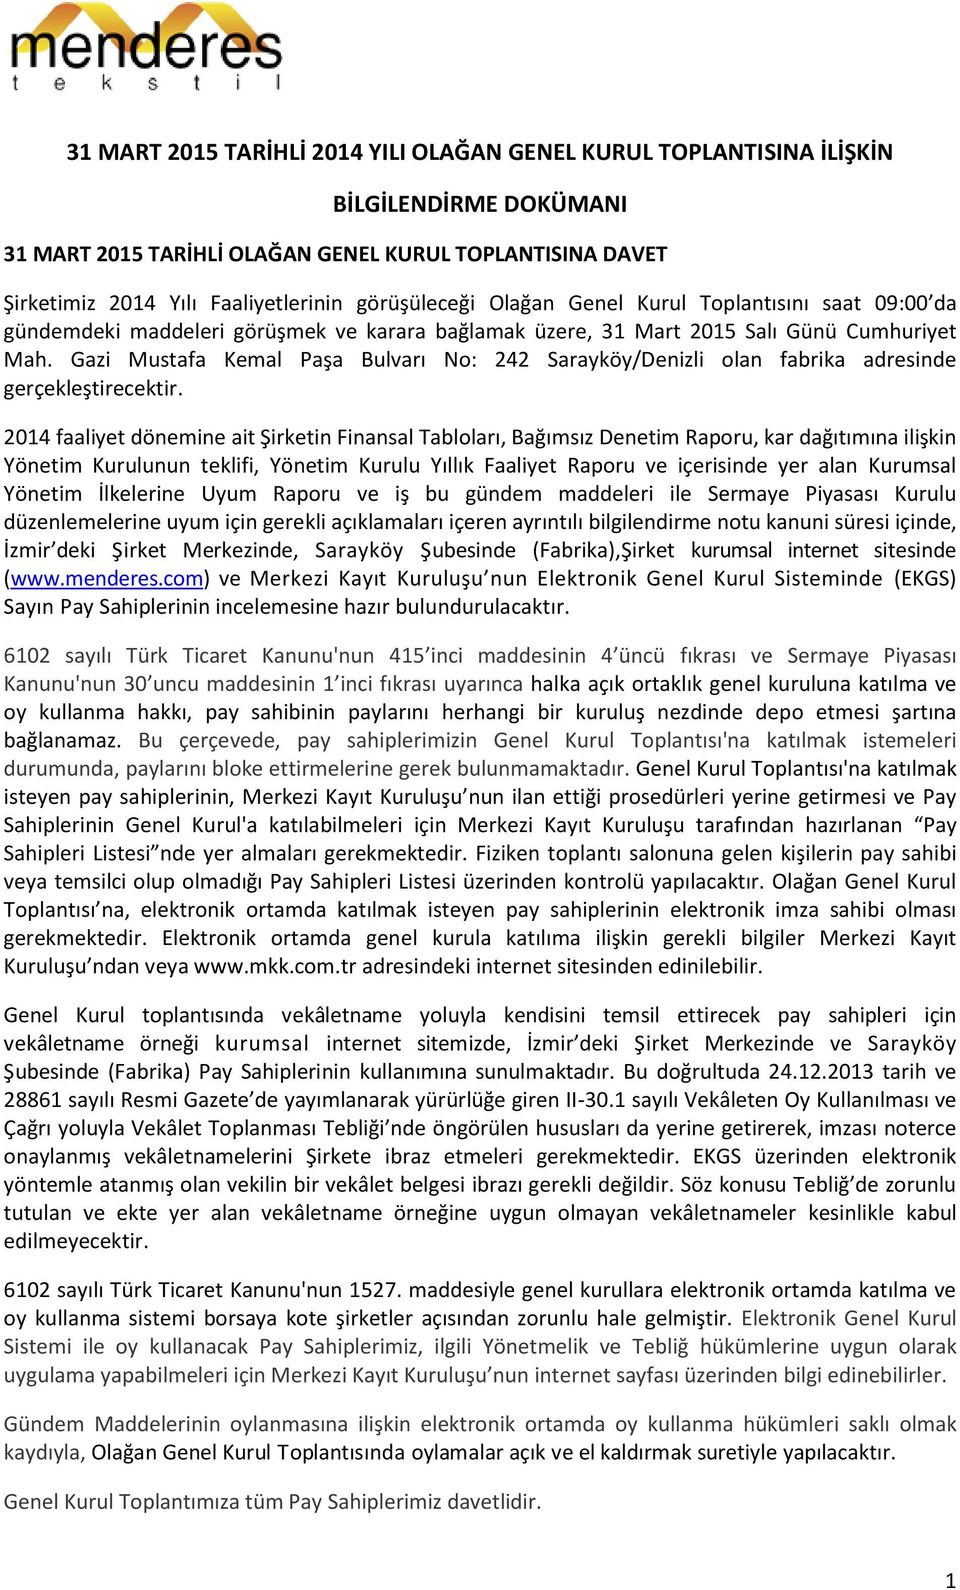 Gazi Mustafa Kemal Paşa Bulvarı No: 242 Sarayköy/Denizli olan fabrika adresinde gerçekleştirecektir.